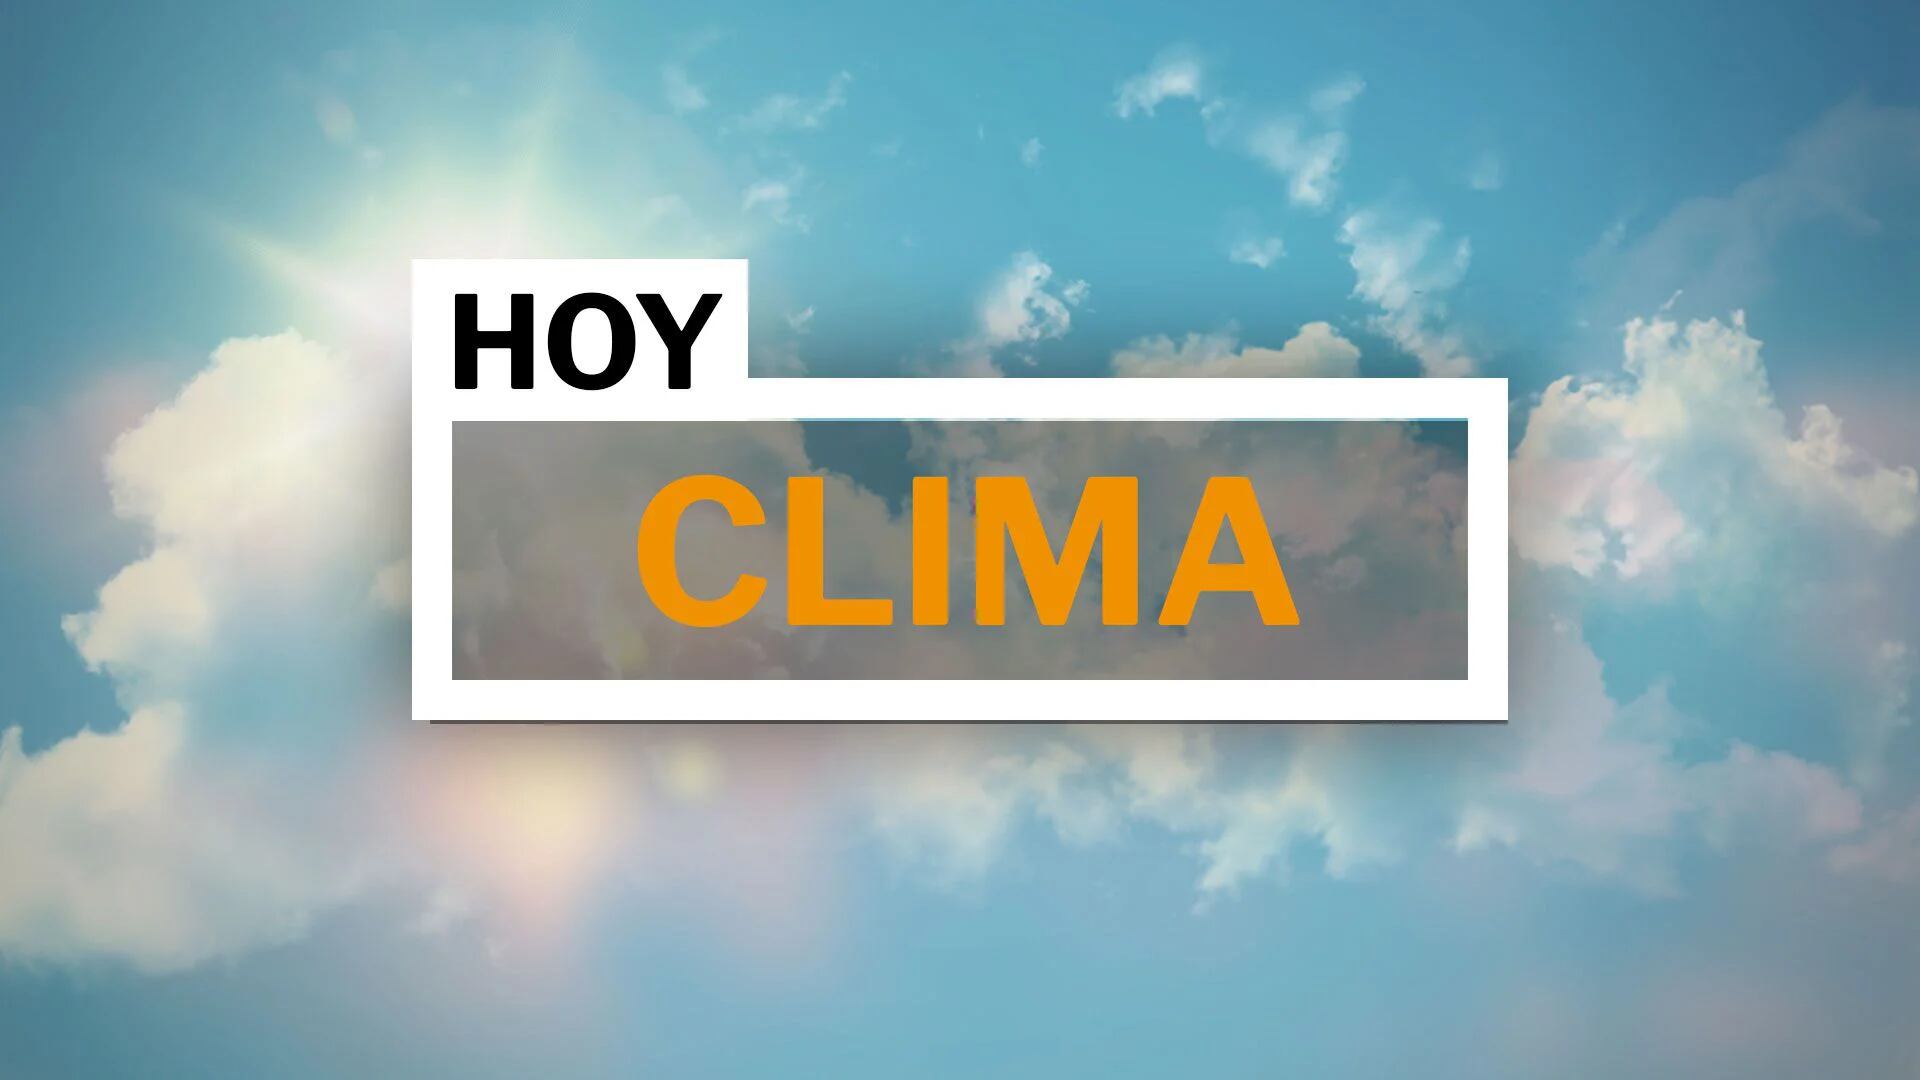 Clima en Puebla de Zaragoza: conoce el pronóstico y prepárate antes de salir